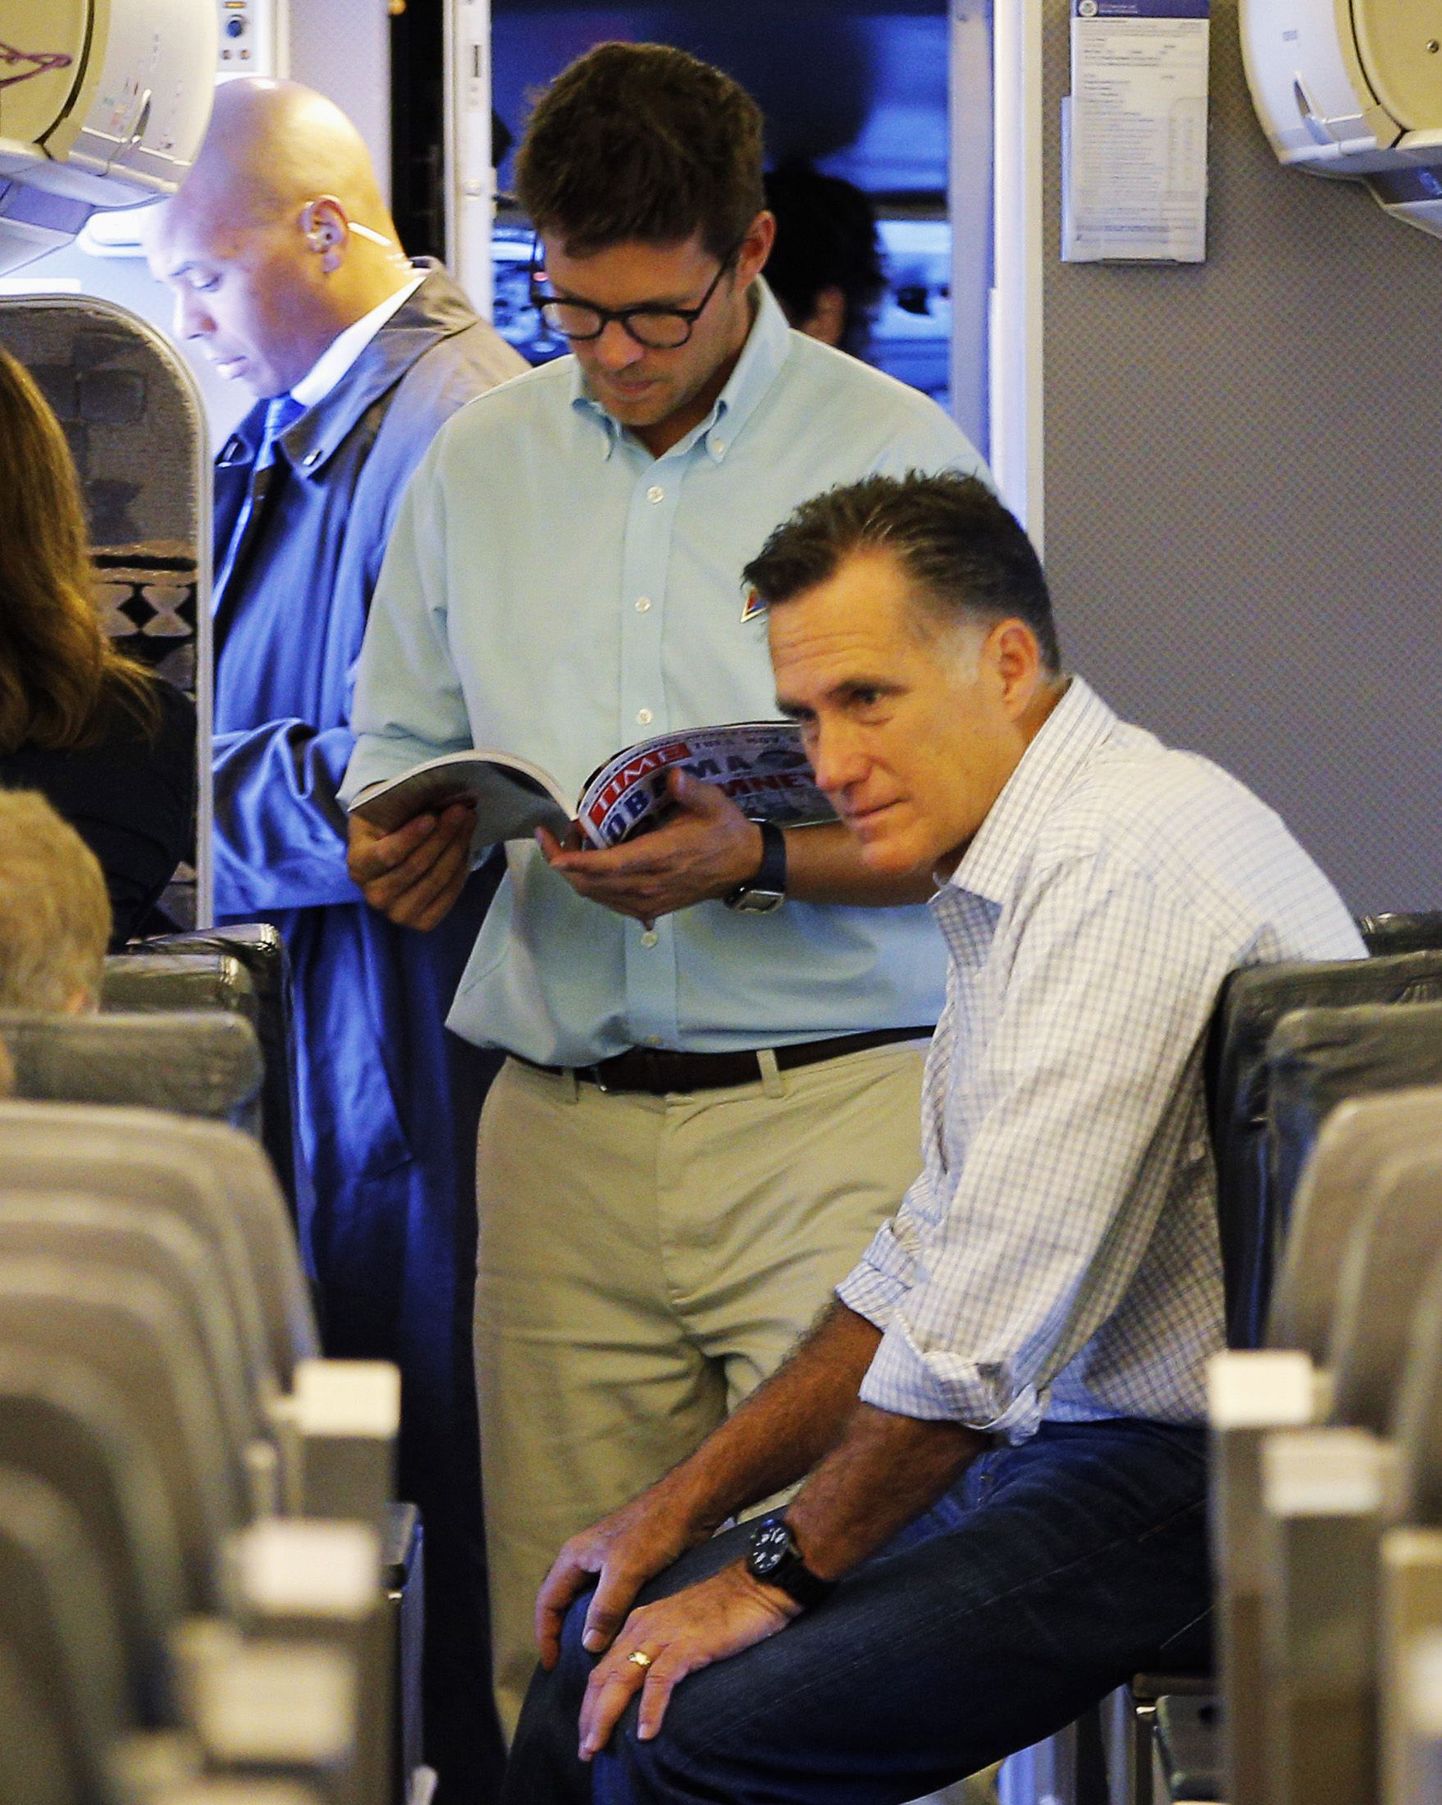 Salateenistuse agent unustas relva presidendikandidaat Mitt Romney (esiplaanil) lennuki WCsse